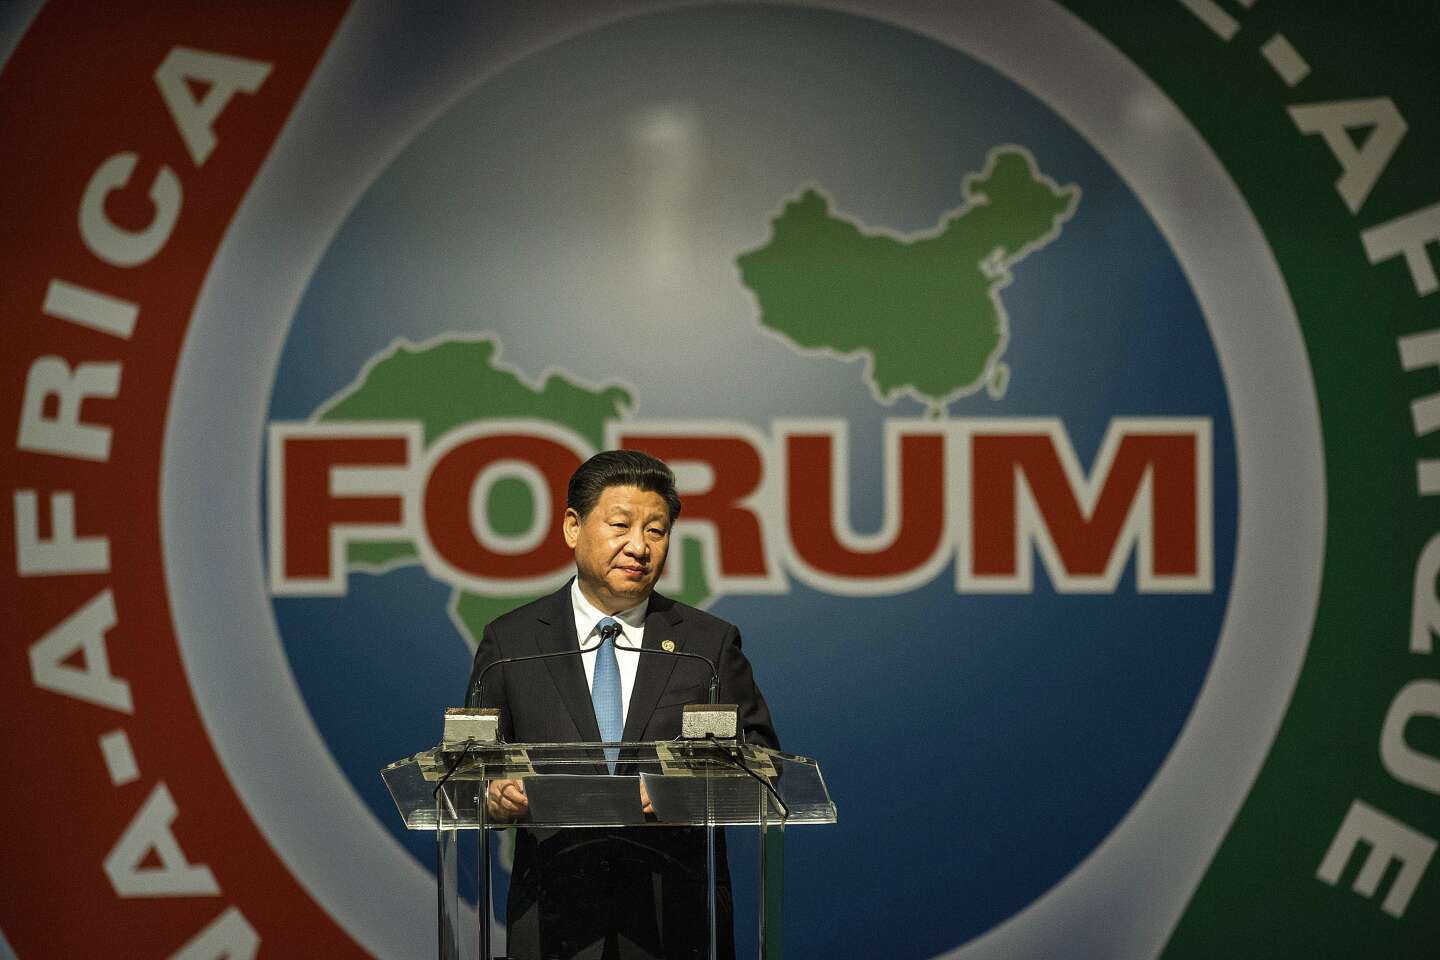 « Xi Jinping veut s’appuyer sur le “Sud global” pour contourner un Nord hostile et s’imposer comme une puissance incontournable »